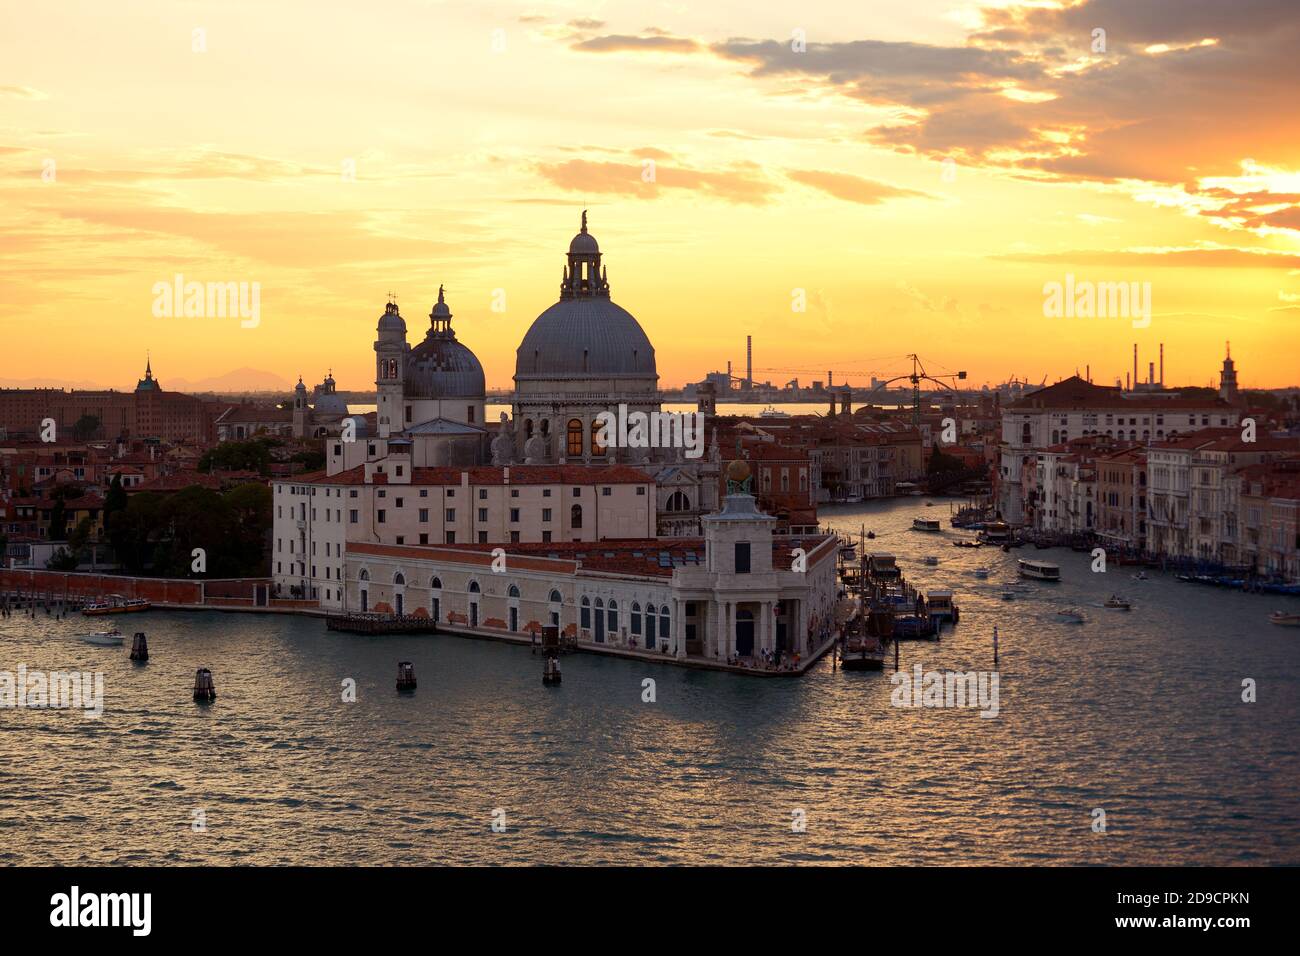 Basilica di Santa Maria della Salute and the Grand Canal at sunset, Venice Stock Photo